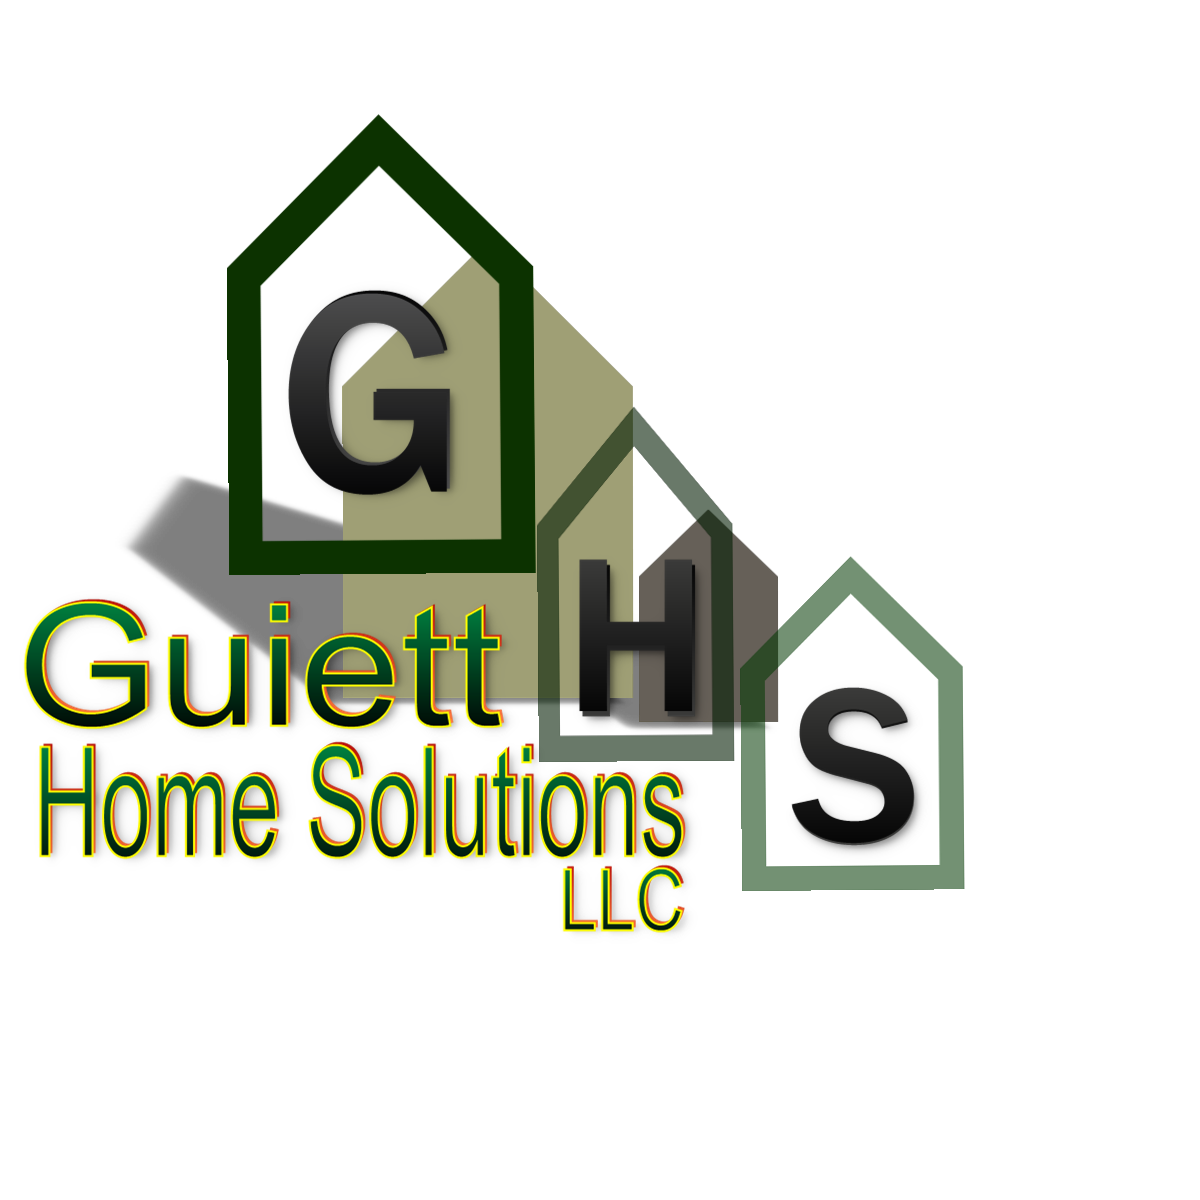 Guiett Home Solutions LLC